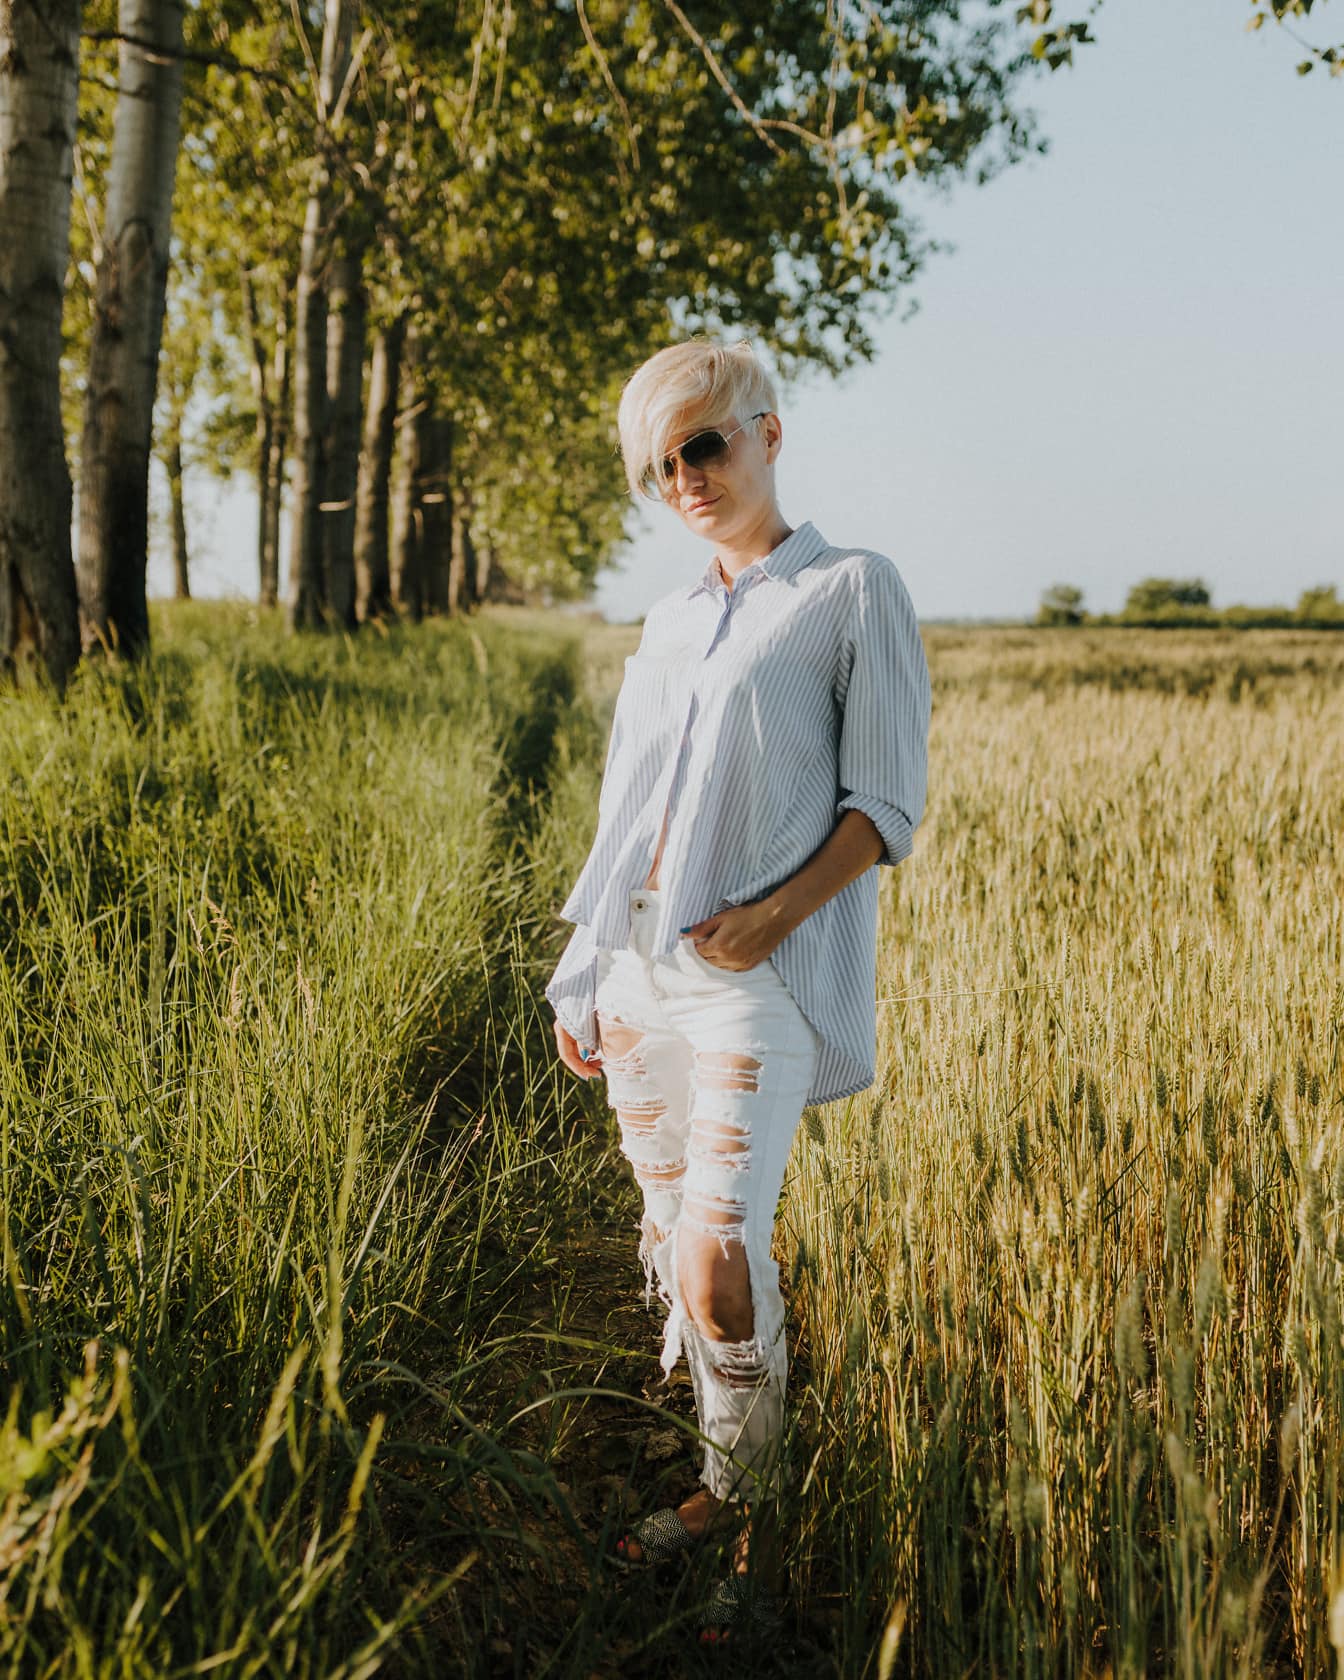 Modelo da foto da mulher na roupa casual ao ar livre no campo do trigo